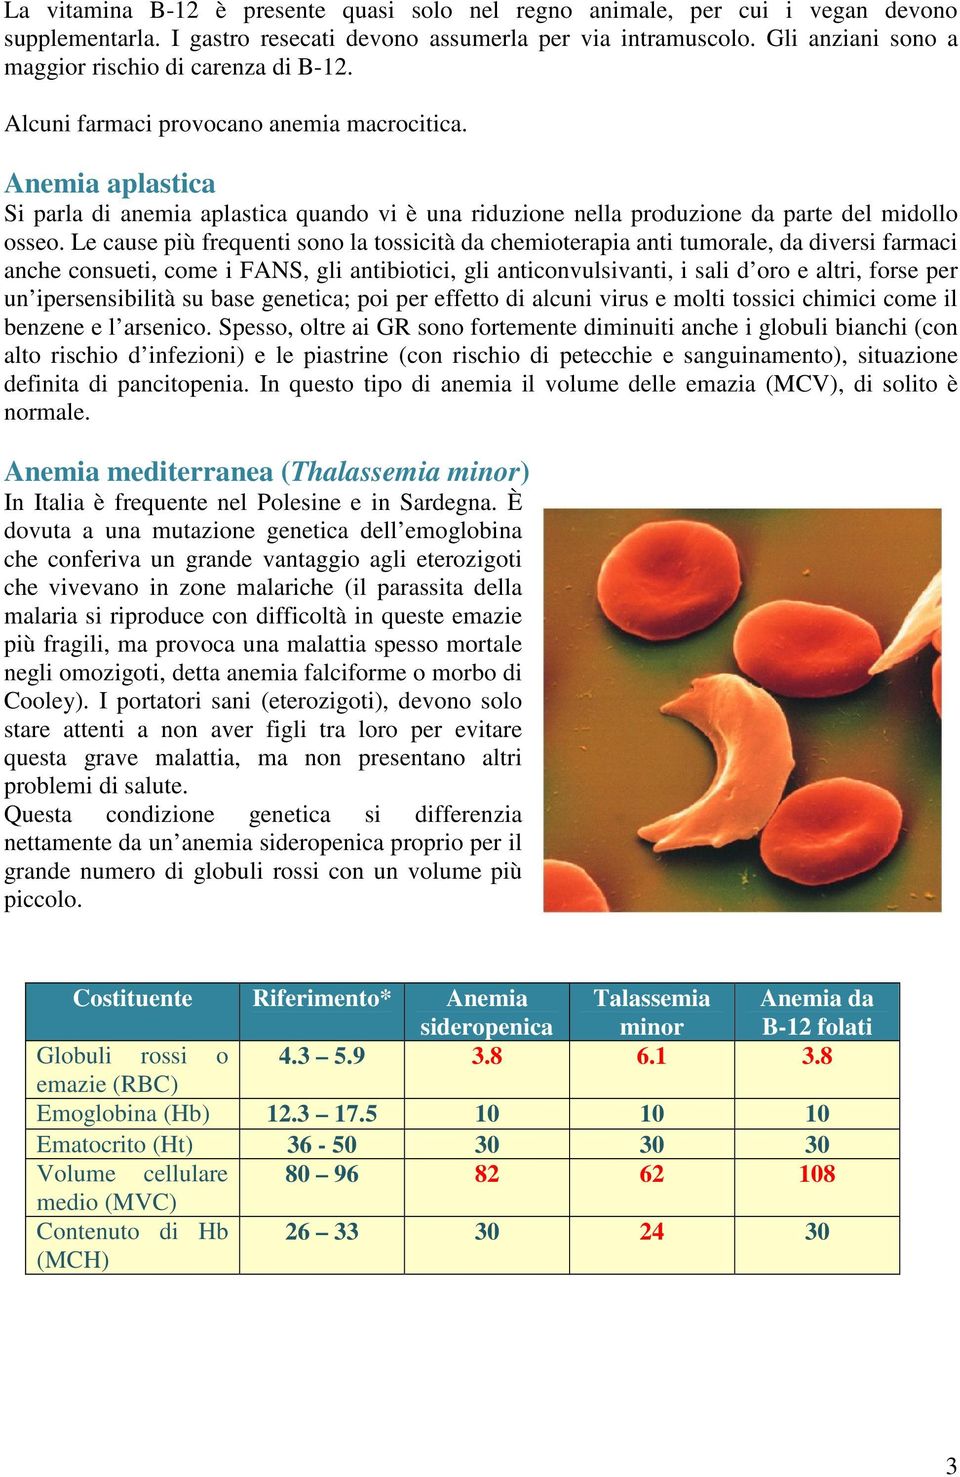 Anemia aplastica Si parla di anemia aplastica quando vi è una riduzione nella produzione da parte del midollo osseo.